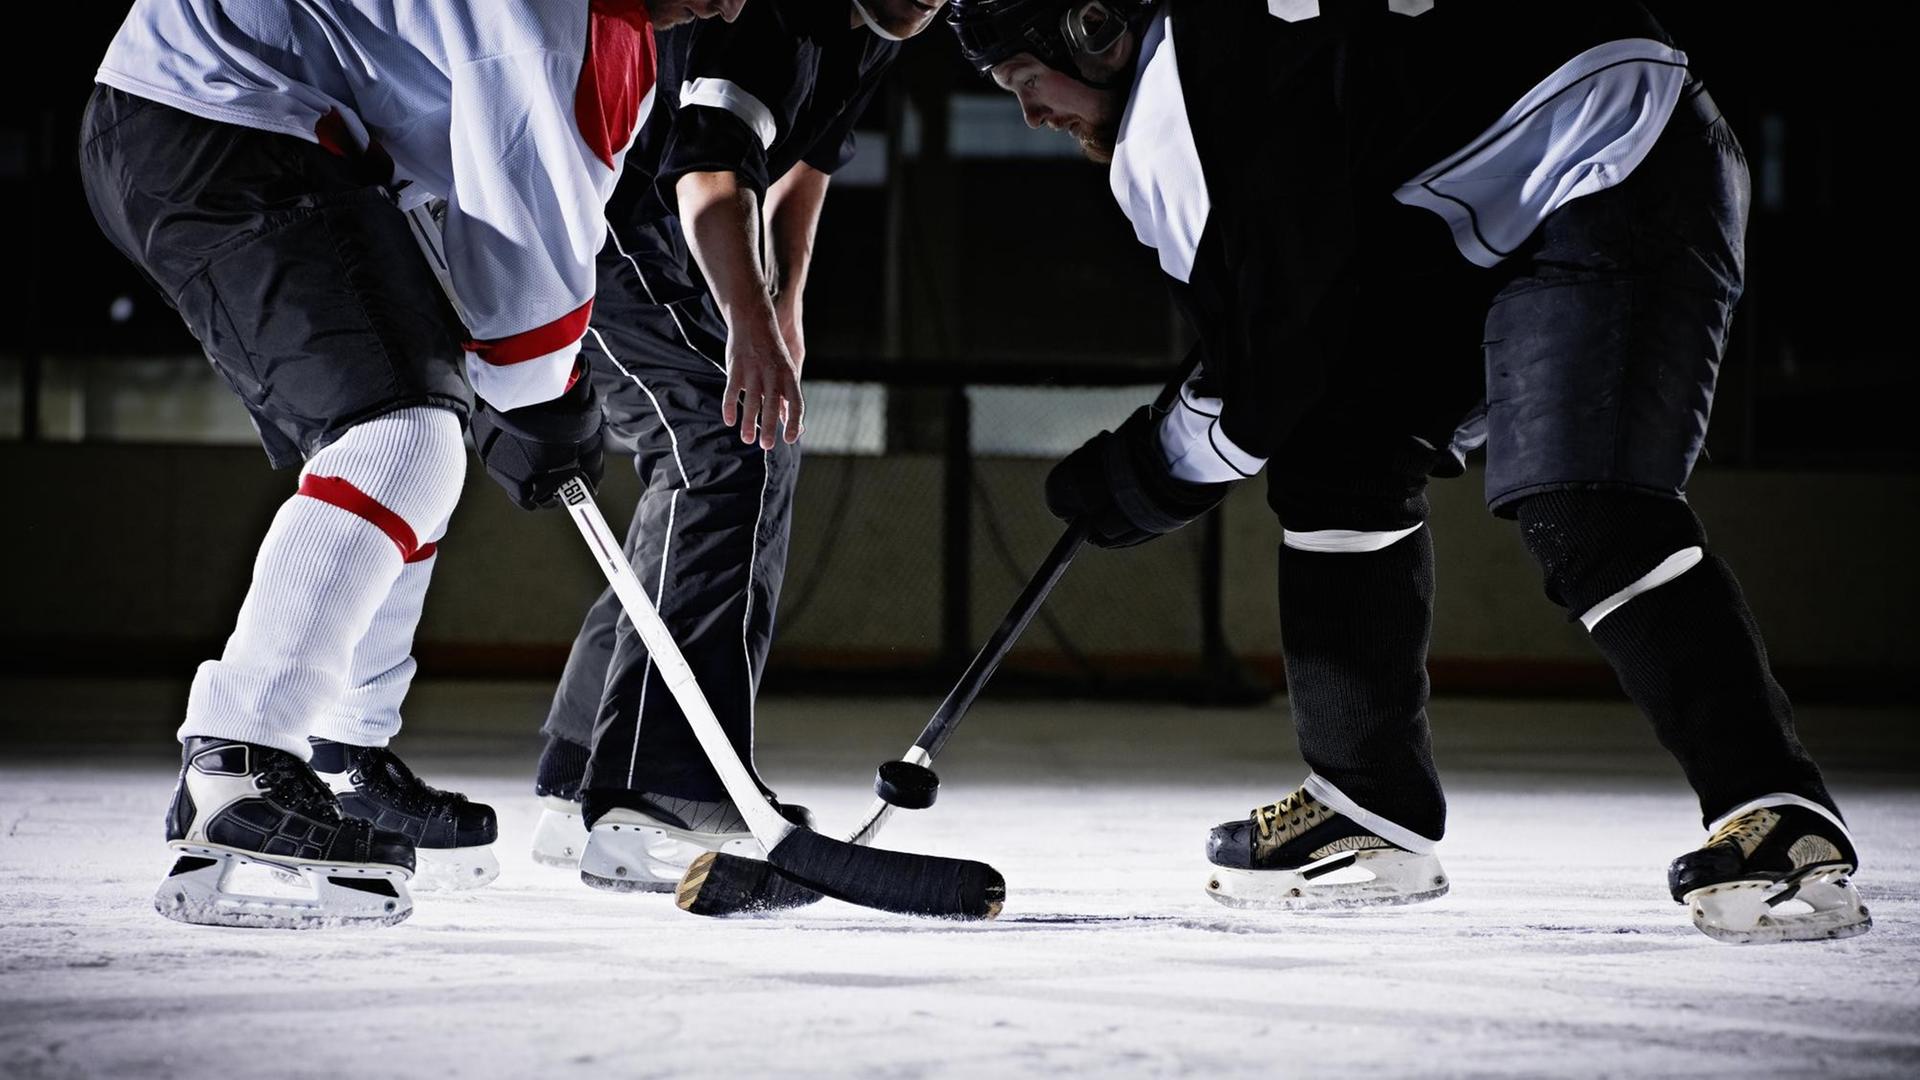 Zwei Eis-Hockey-Spieler kämpfen um den Puck.